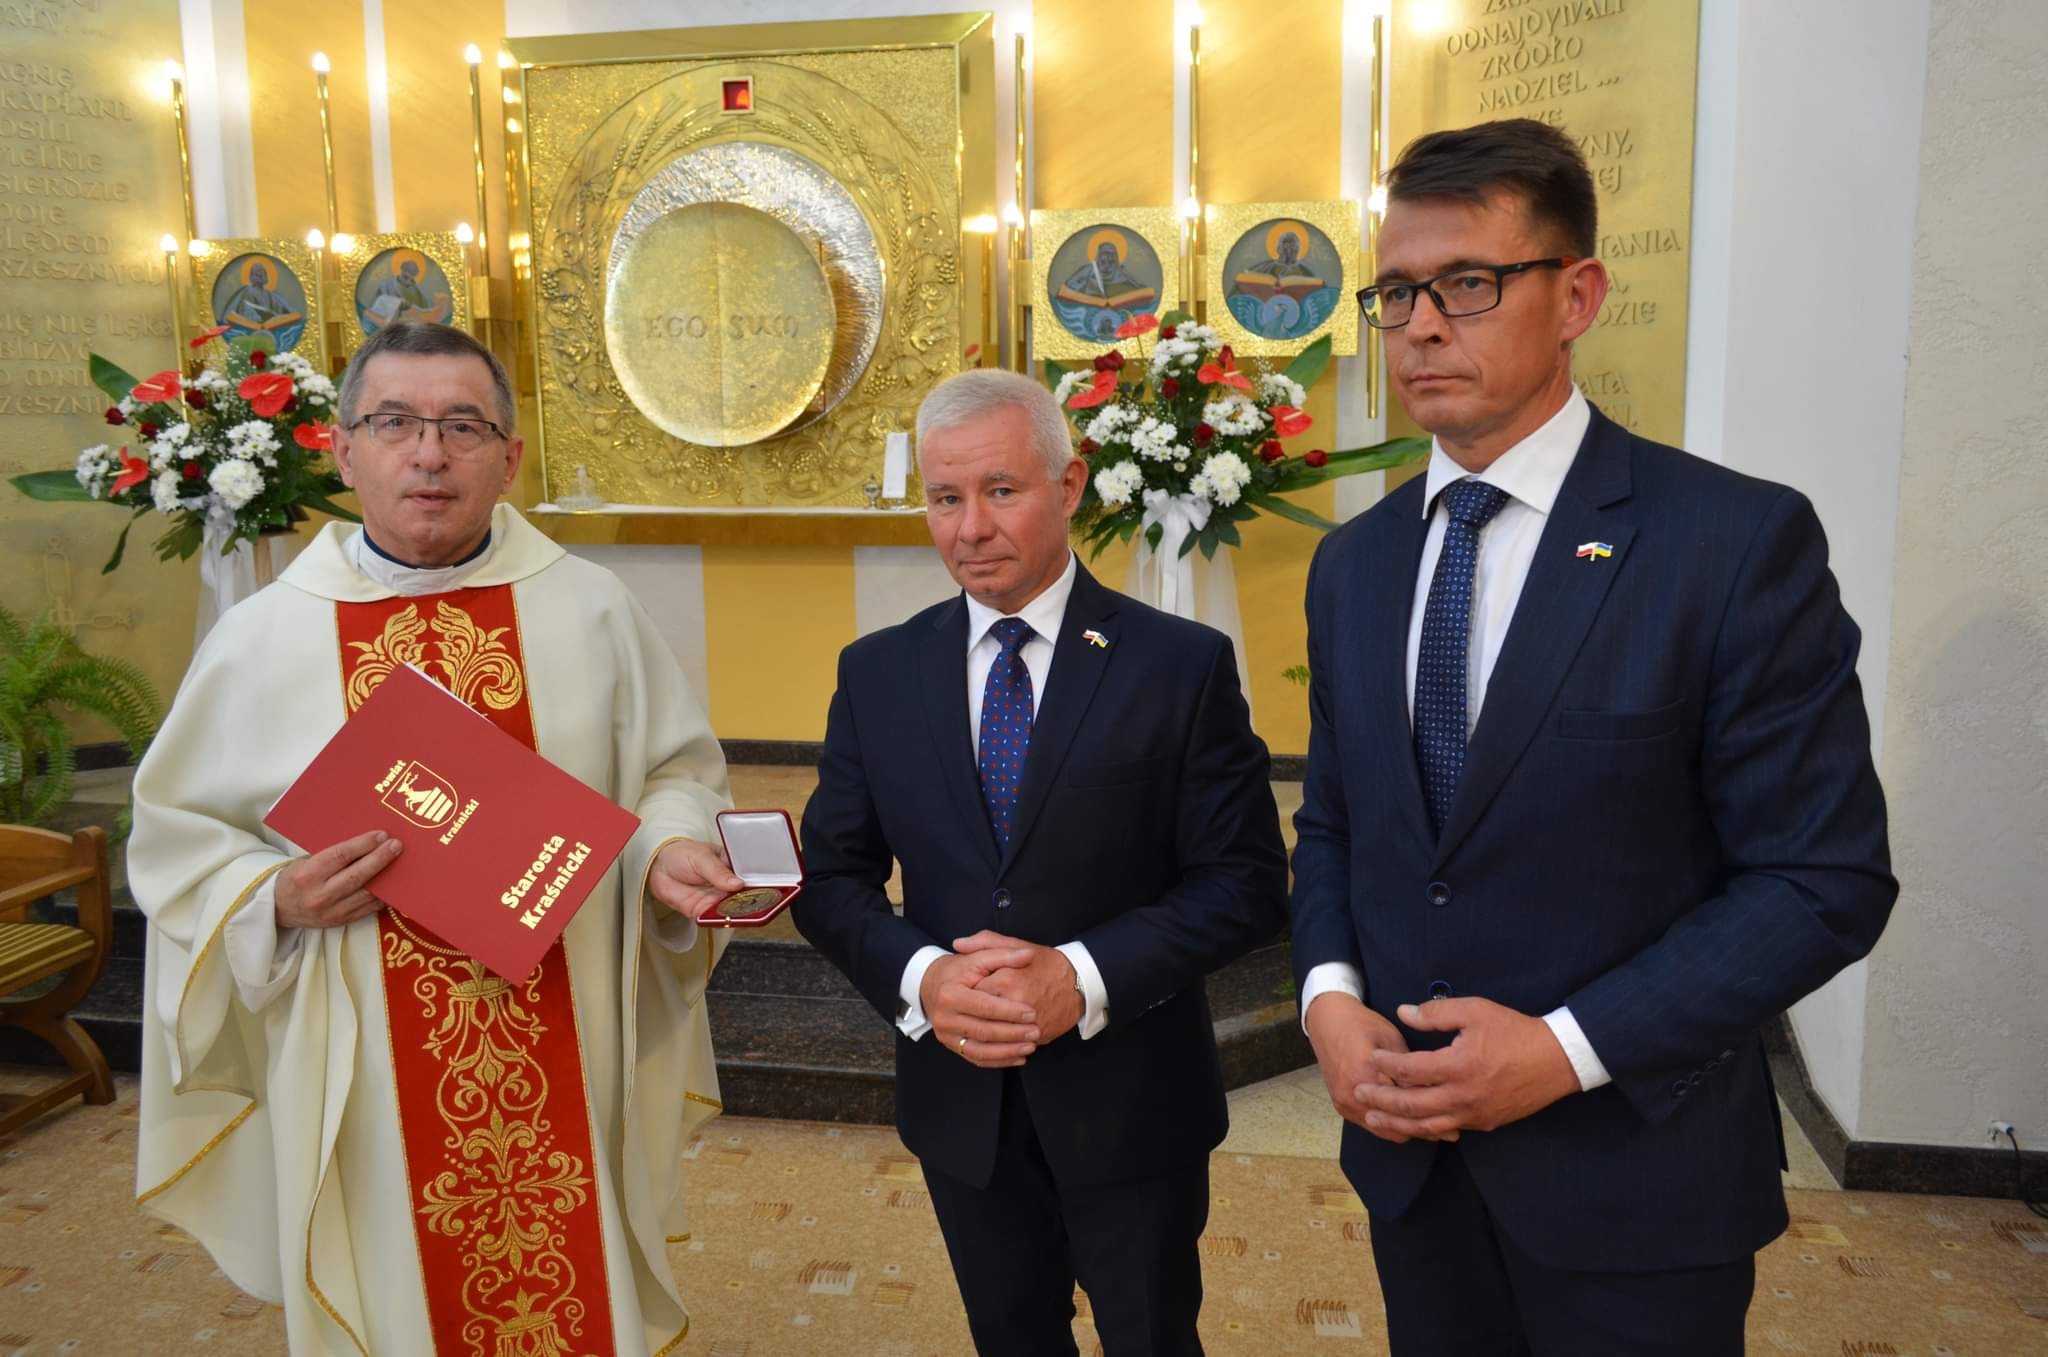 Jubileusz 40-lecia święceń kapłańskich i 15-lecia posługi kapłańskiej w Kraśniku ks. Wiesława Szewczuka